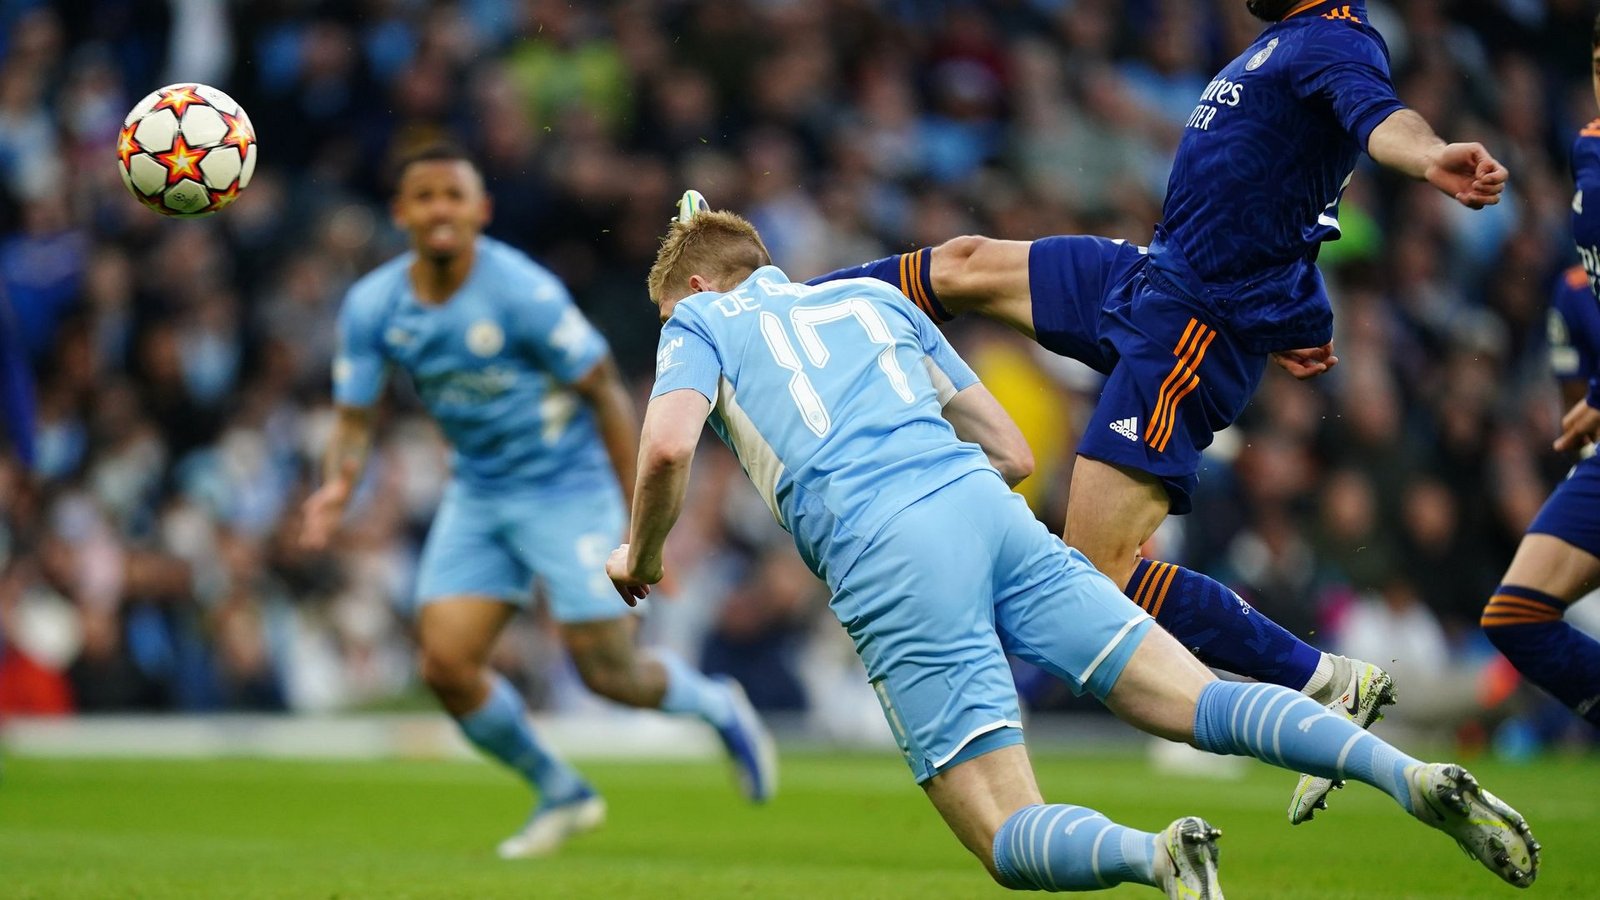 Kevin De Bruyne (M) von Manchester City köpft zum 1:0 gegen Real Madrid ein.Foto: Mike Egerton/PA Wire/dpa